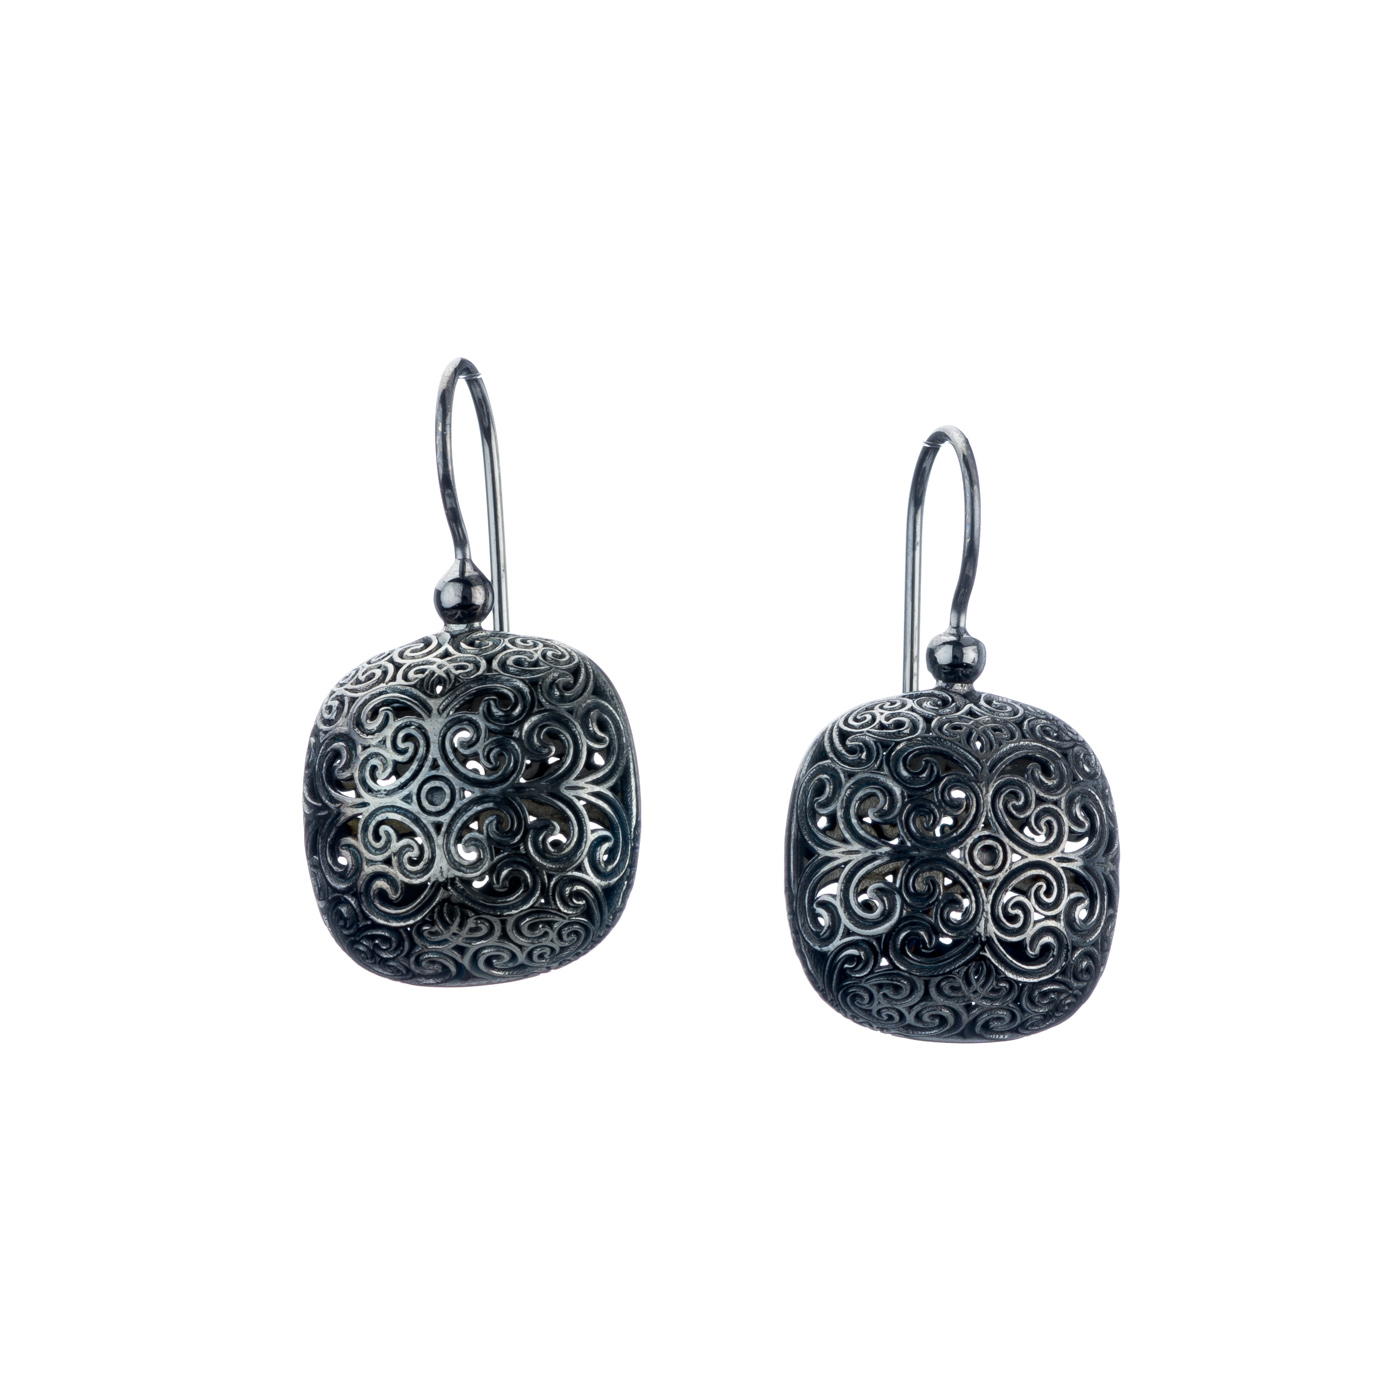 Kallisto cushion earrings in Black plated silver 925